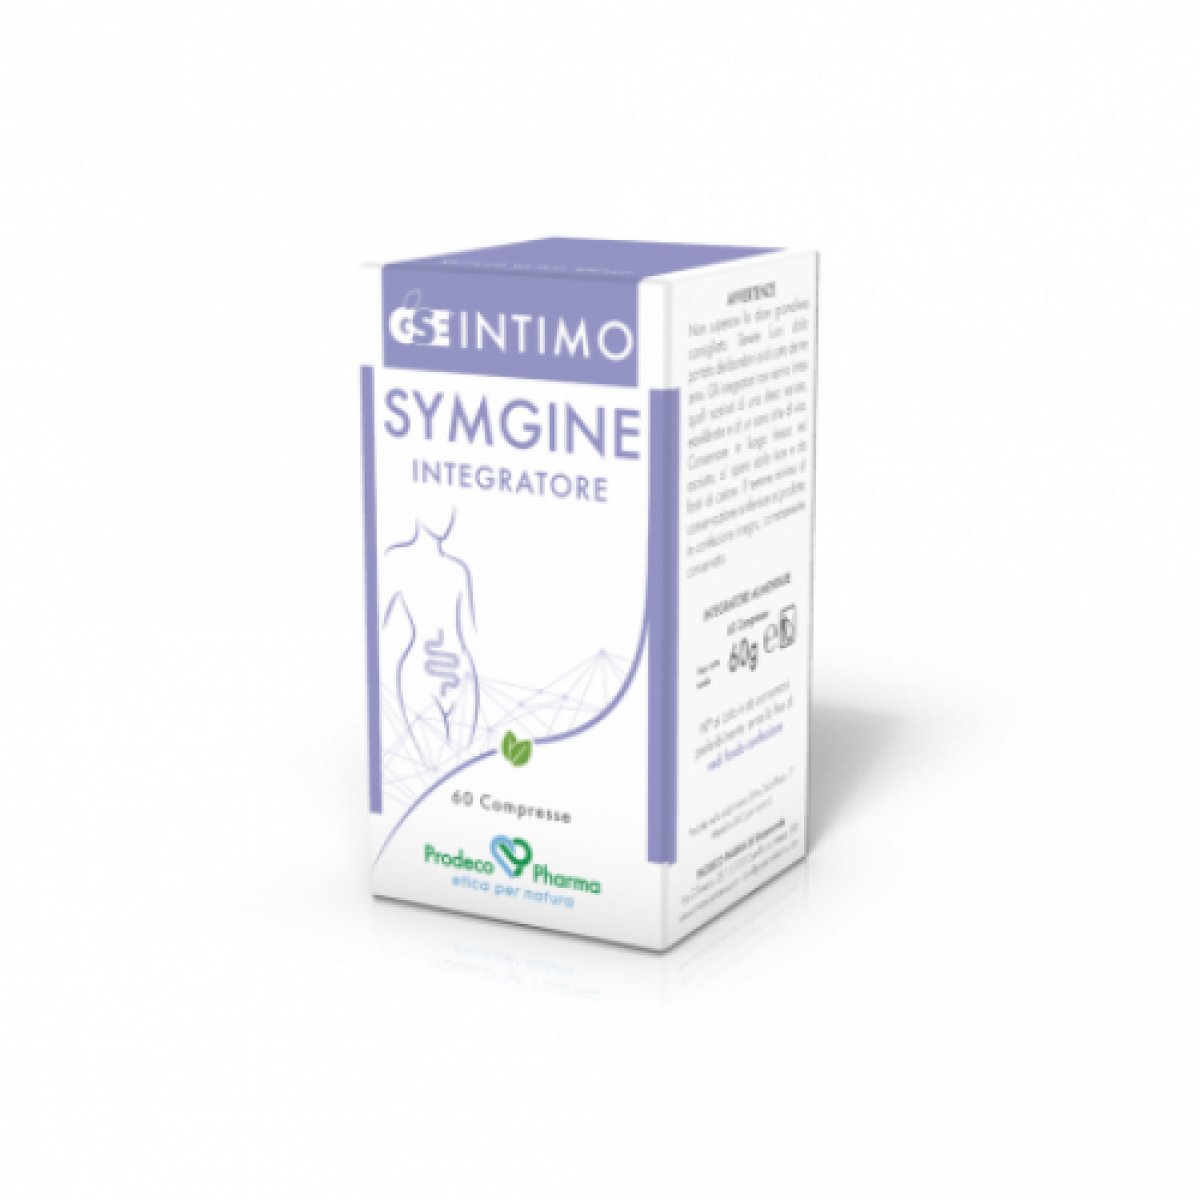 GSE Intimo Symgine  - Prodeco Pharma GSE Intimo Symgine è un integratore alimentare a base di Estratto di semi di Pompelmo, Tabebuja, Rosmarino e Uncaria, e contribuisce all'equilibrio microbico e a sostenere le naturali difese dell'organismo. 60 compresse